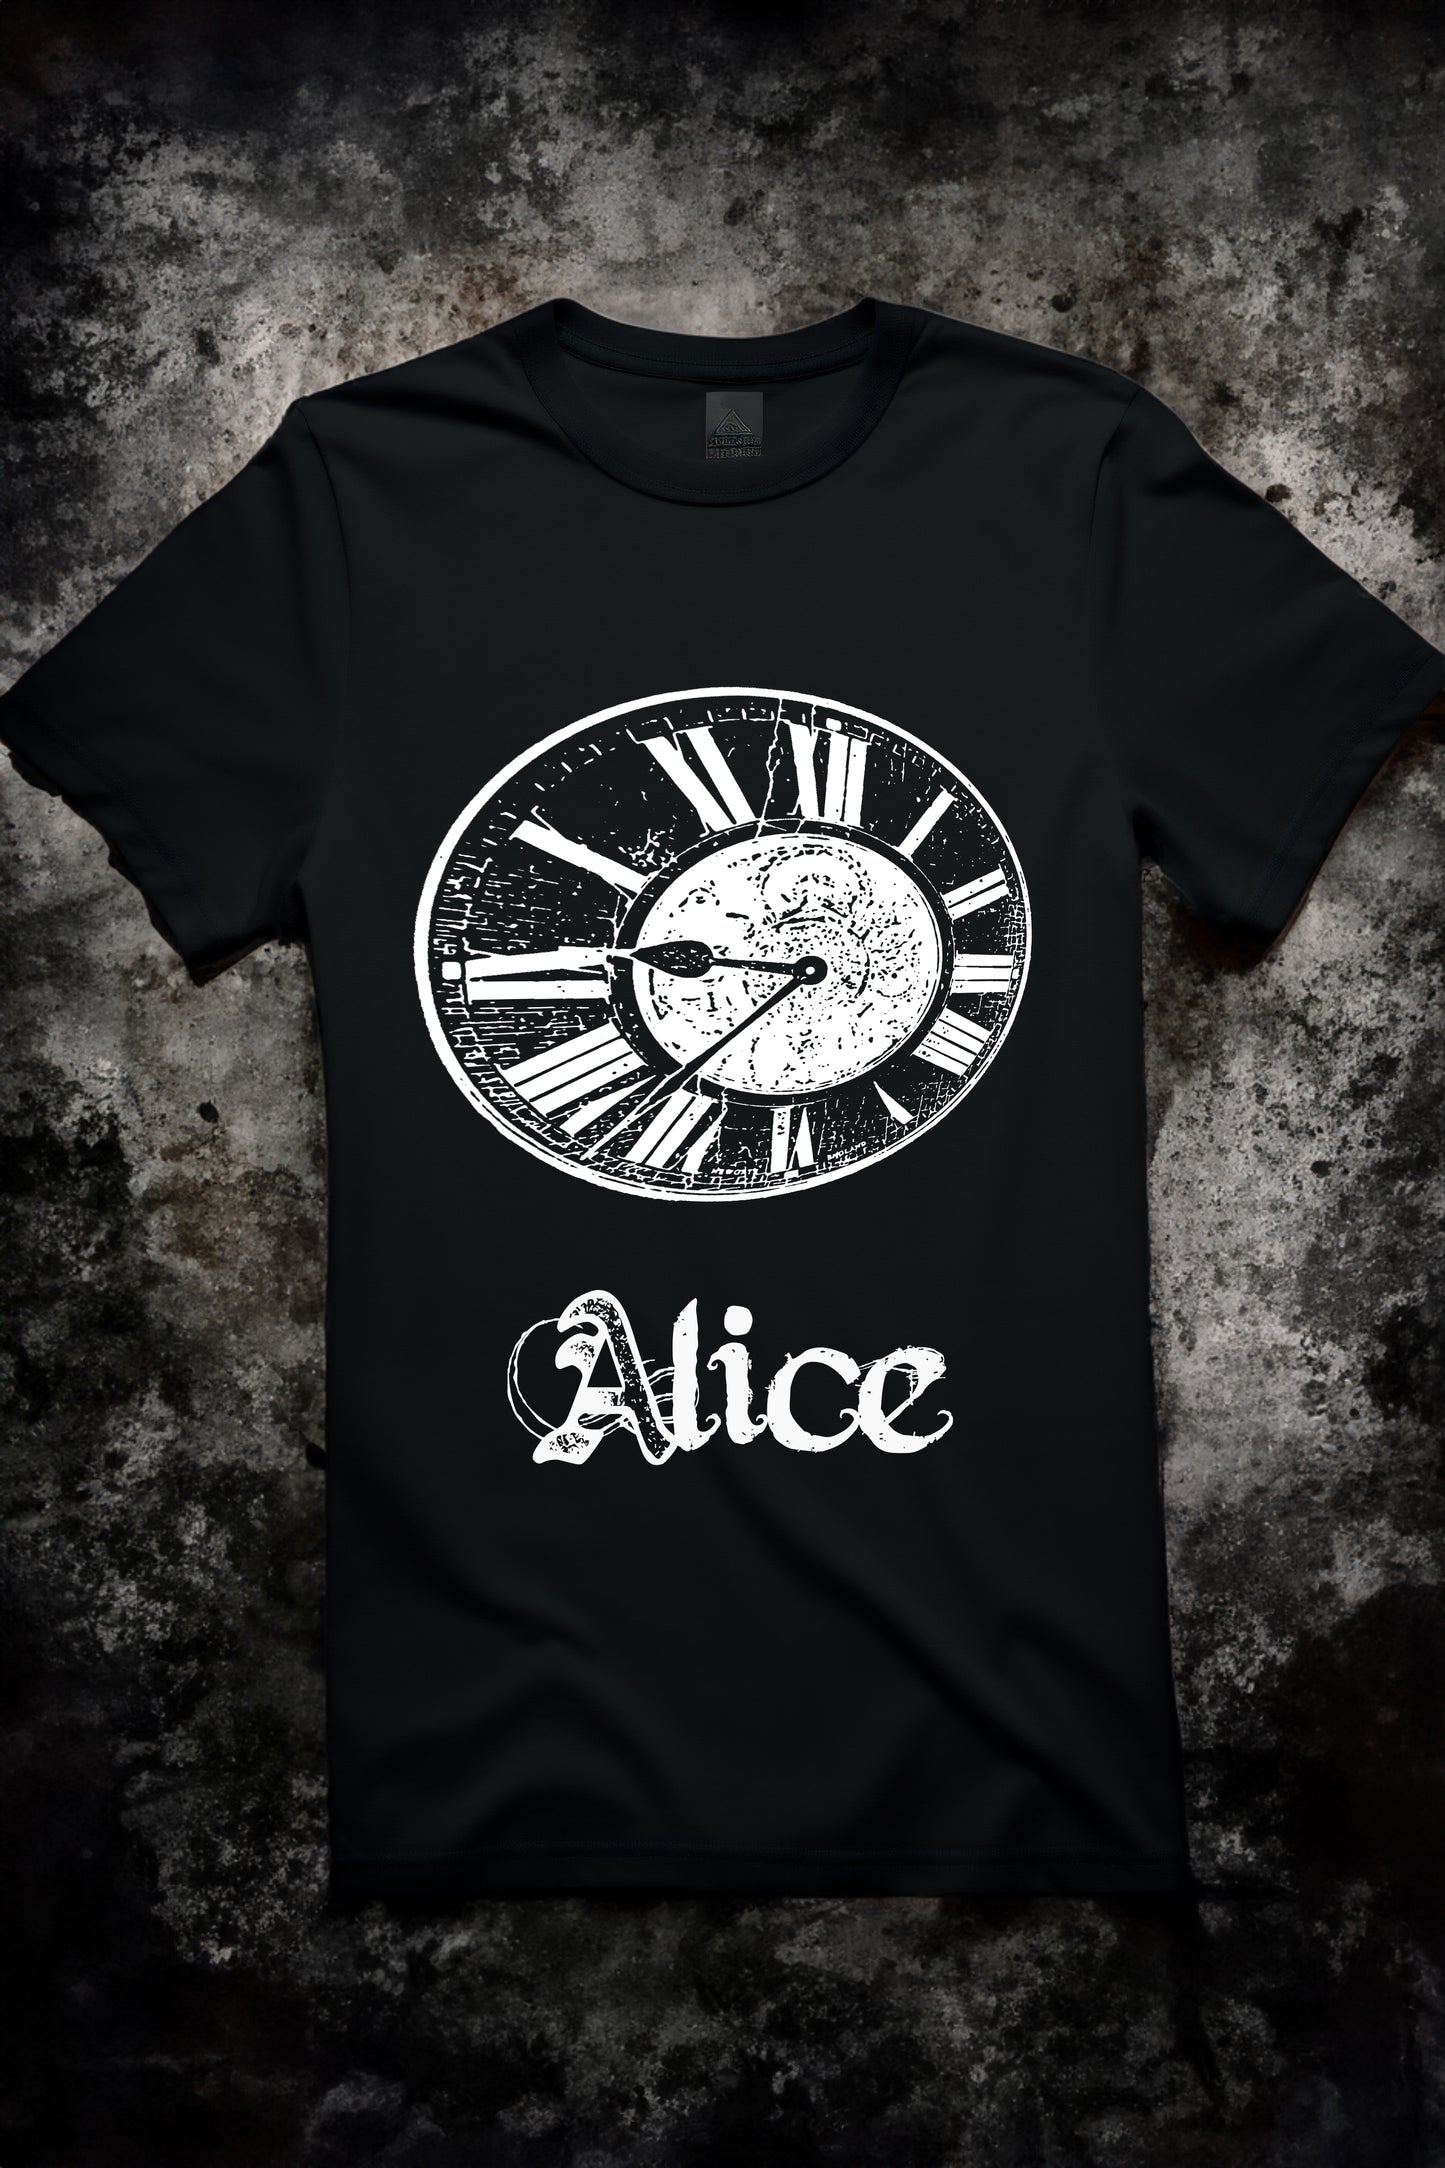 2012 AL1CE OG Shirt (Limited Edition)